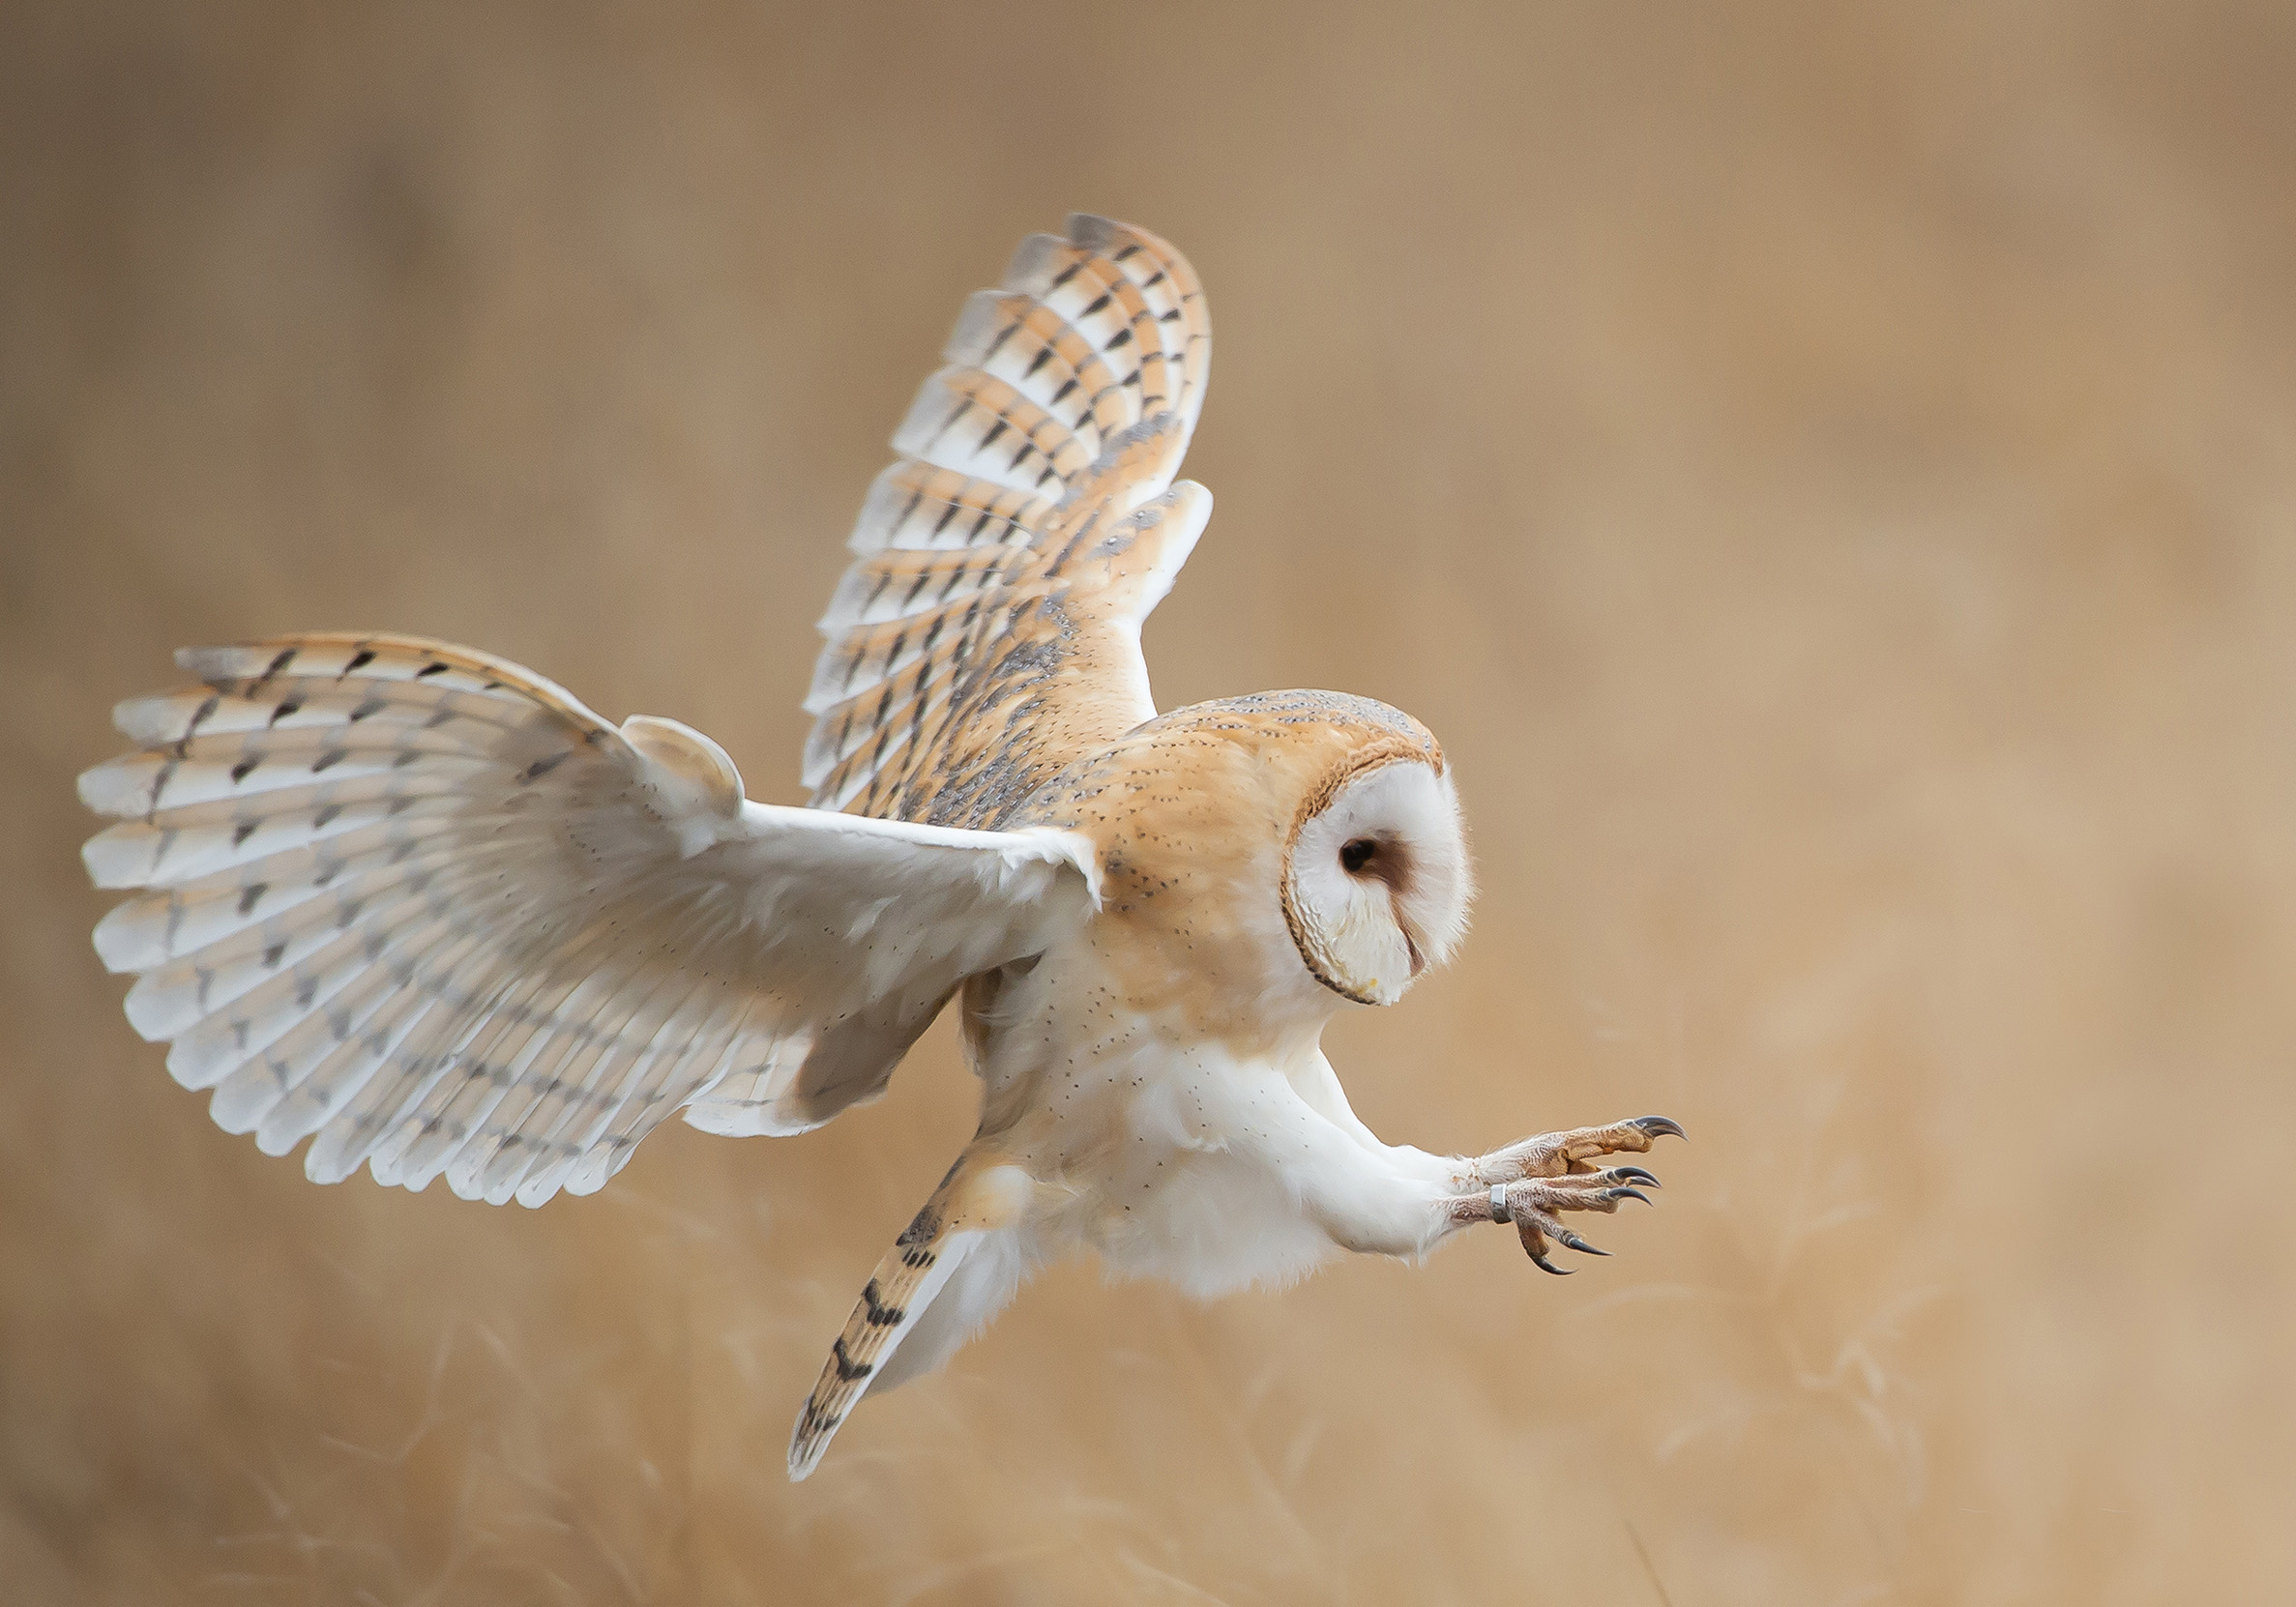 Barn owl in flight before attack.